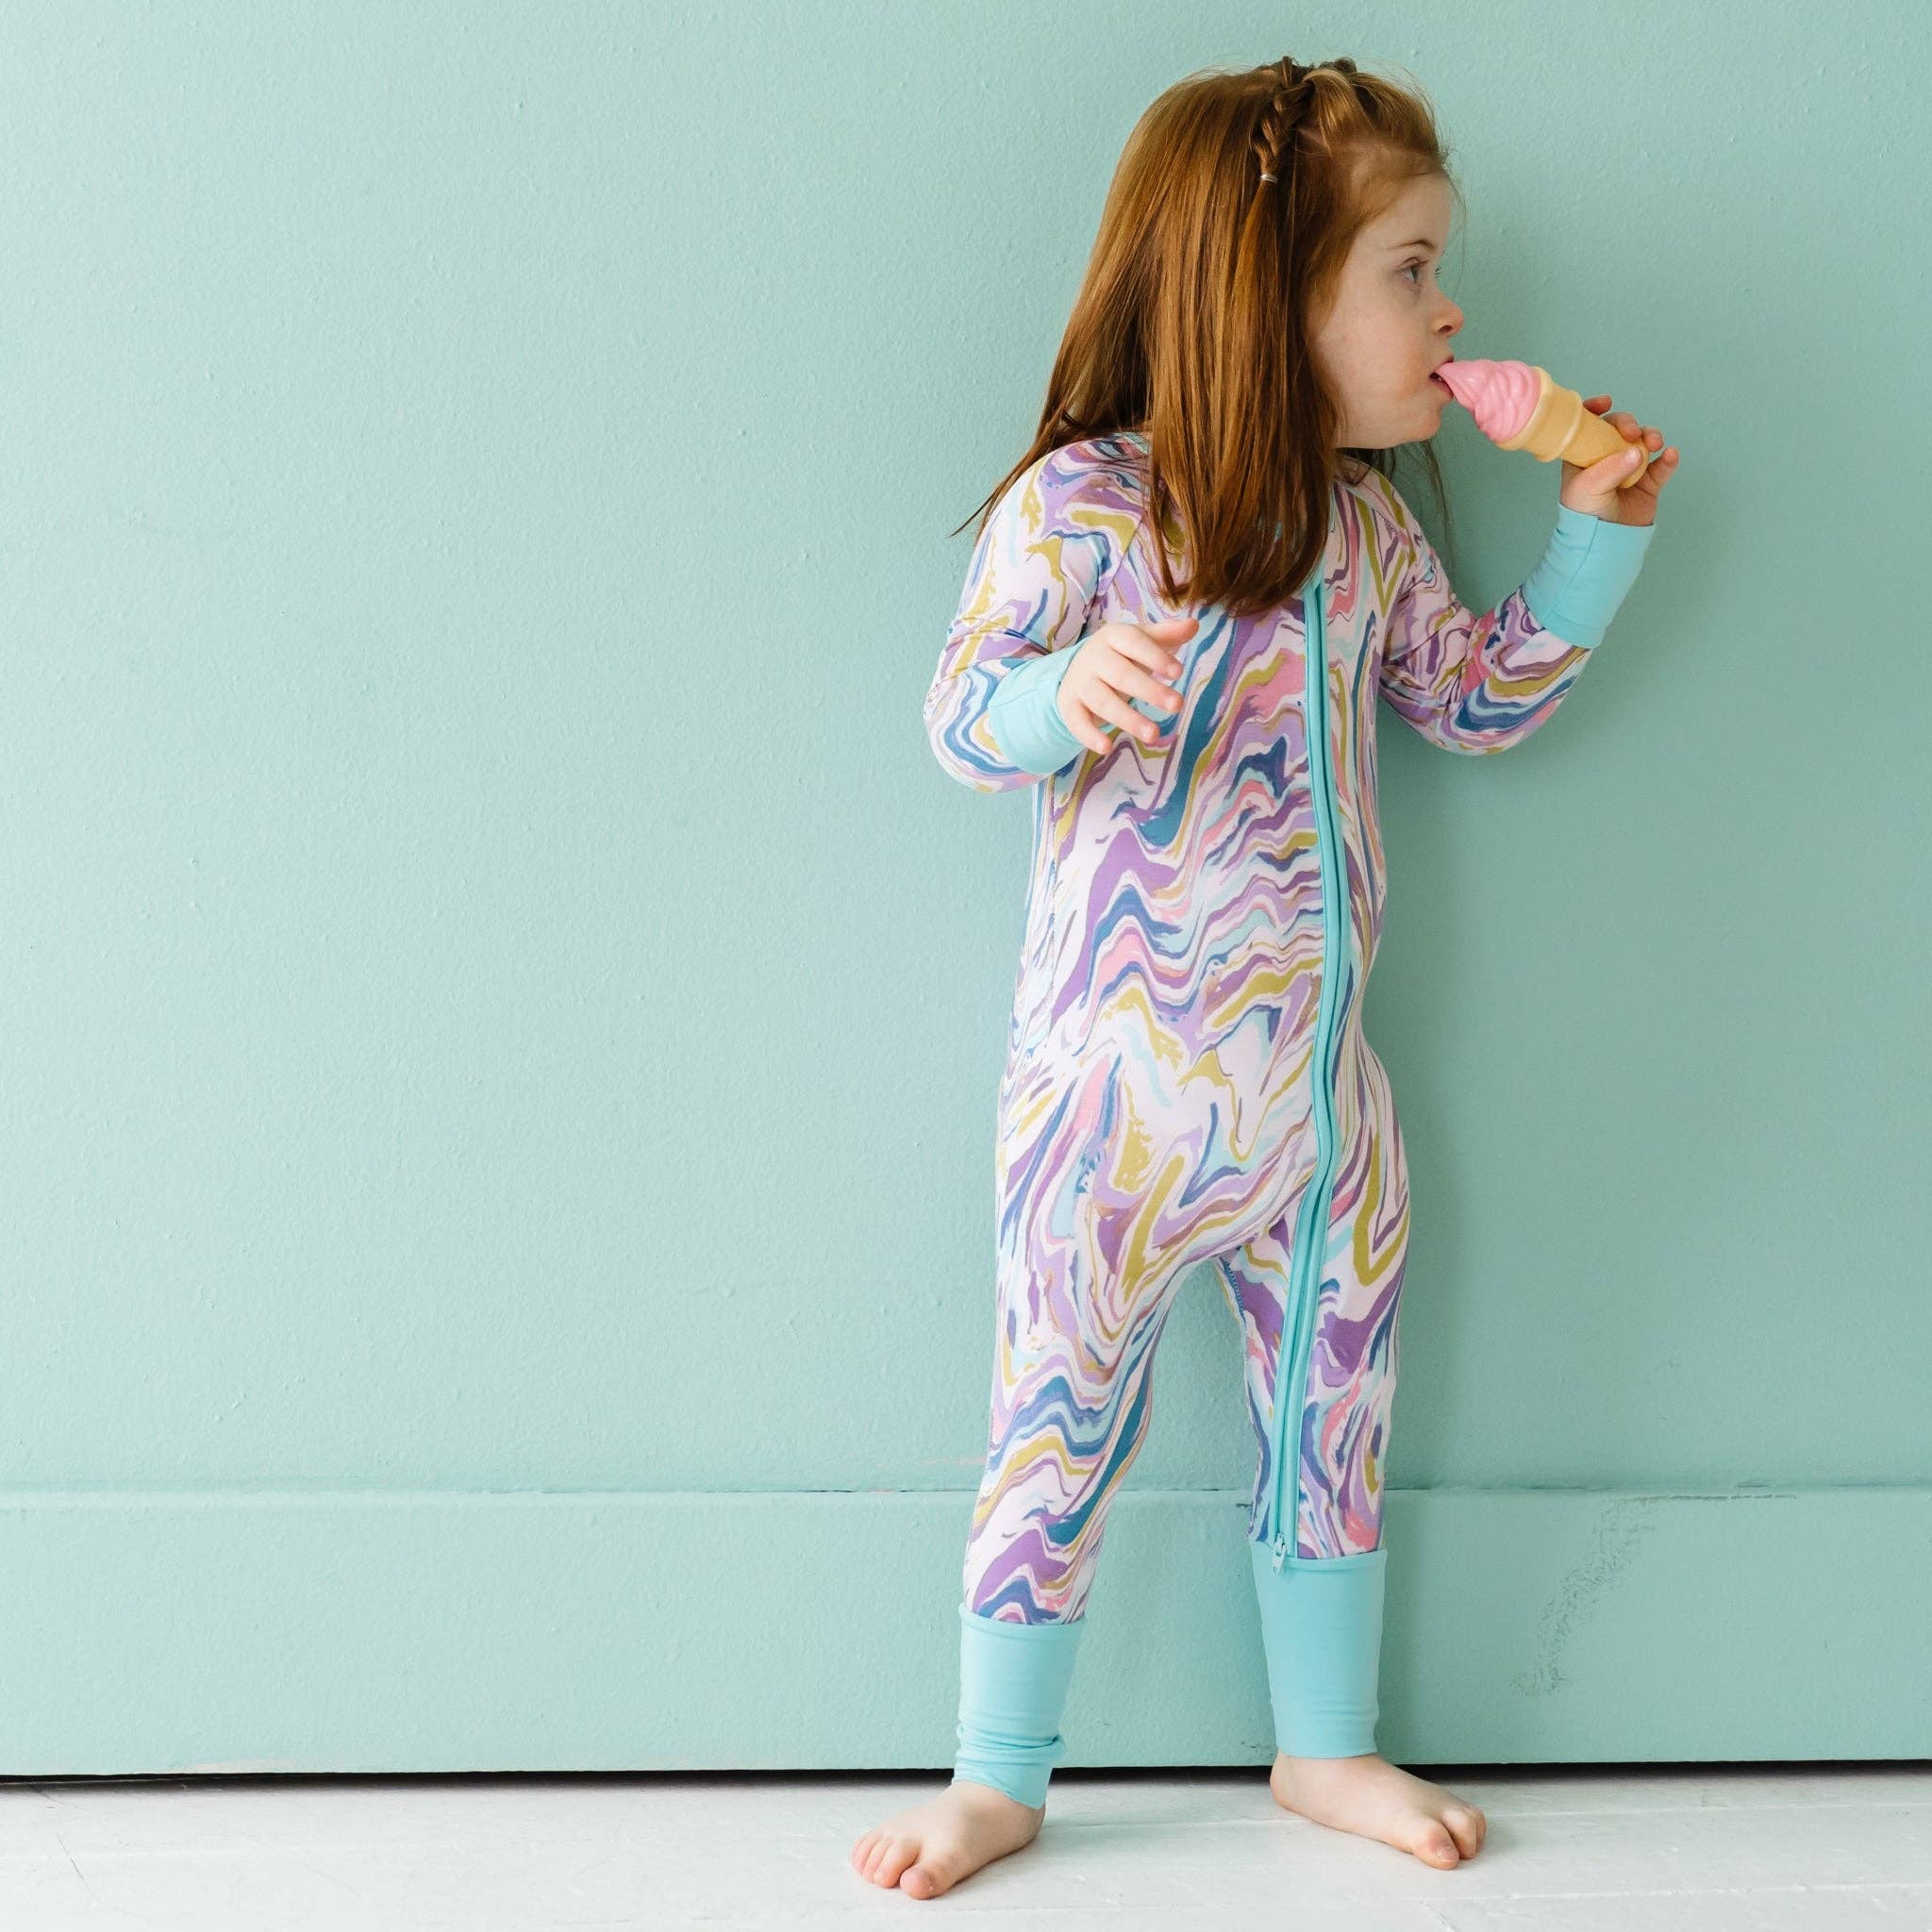 niños en azul 12-18 meses Ropa Ropa para niño Pijamas y batas Batas Bata suave personalizada para bebés 